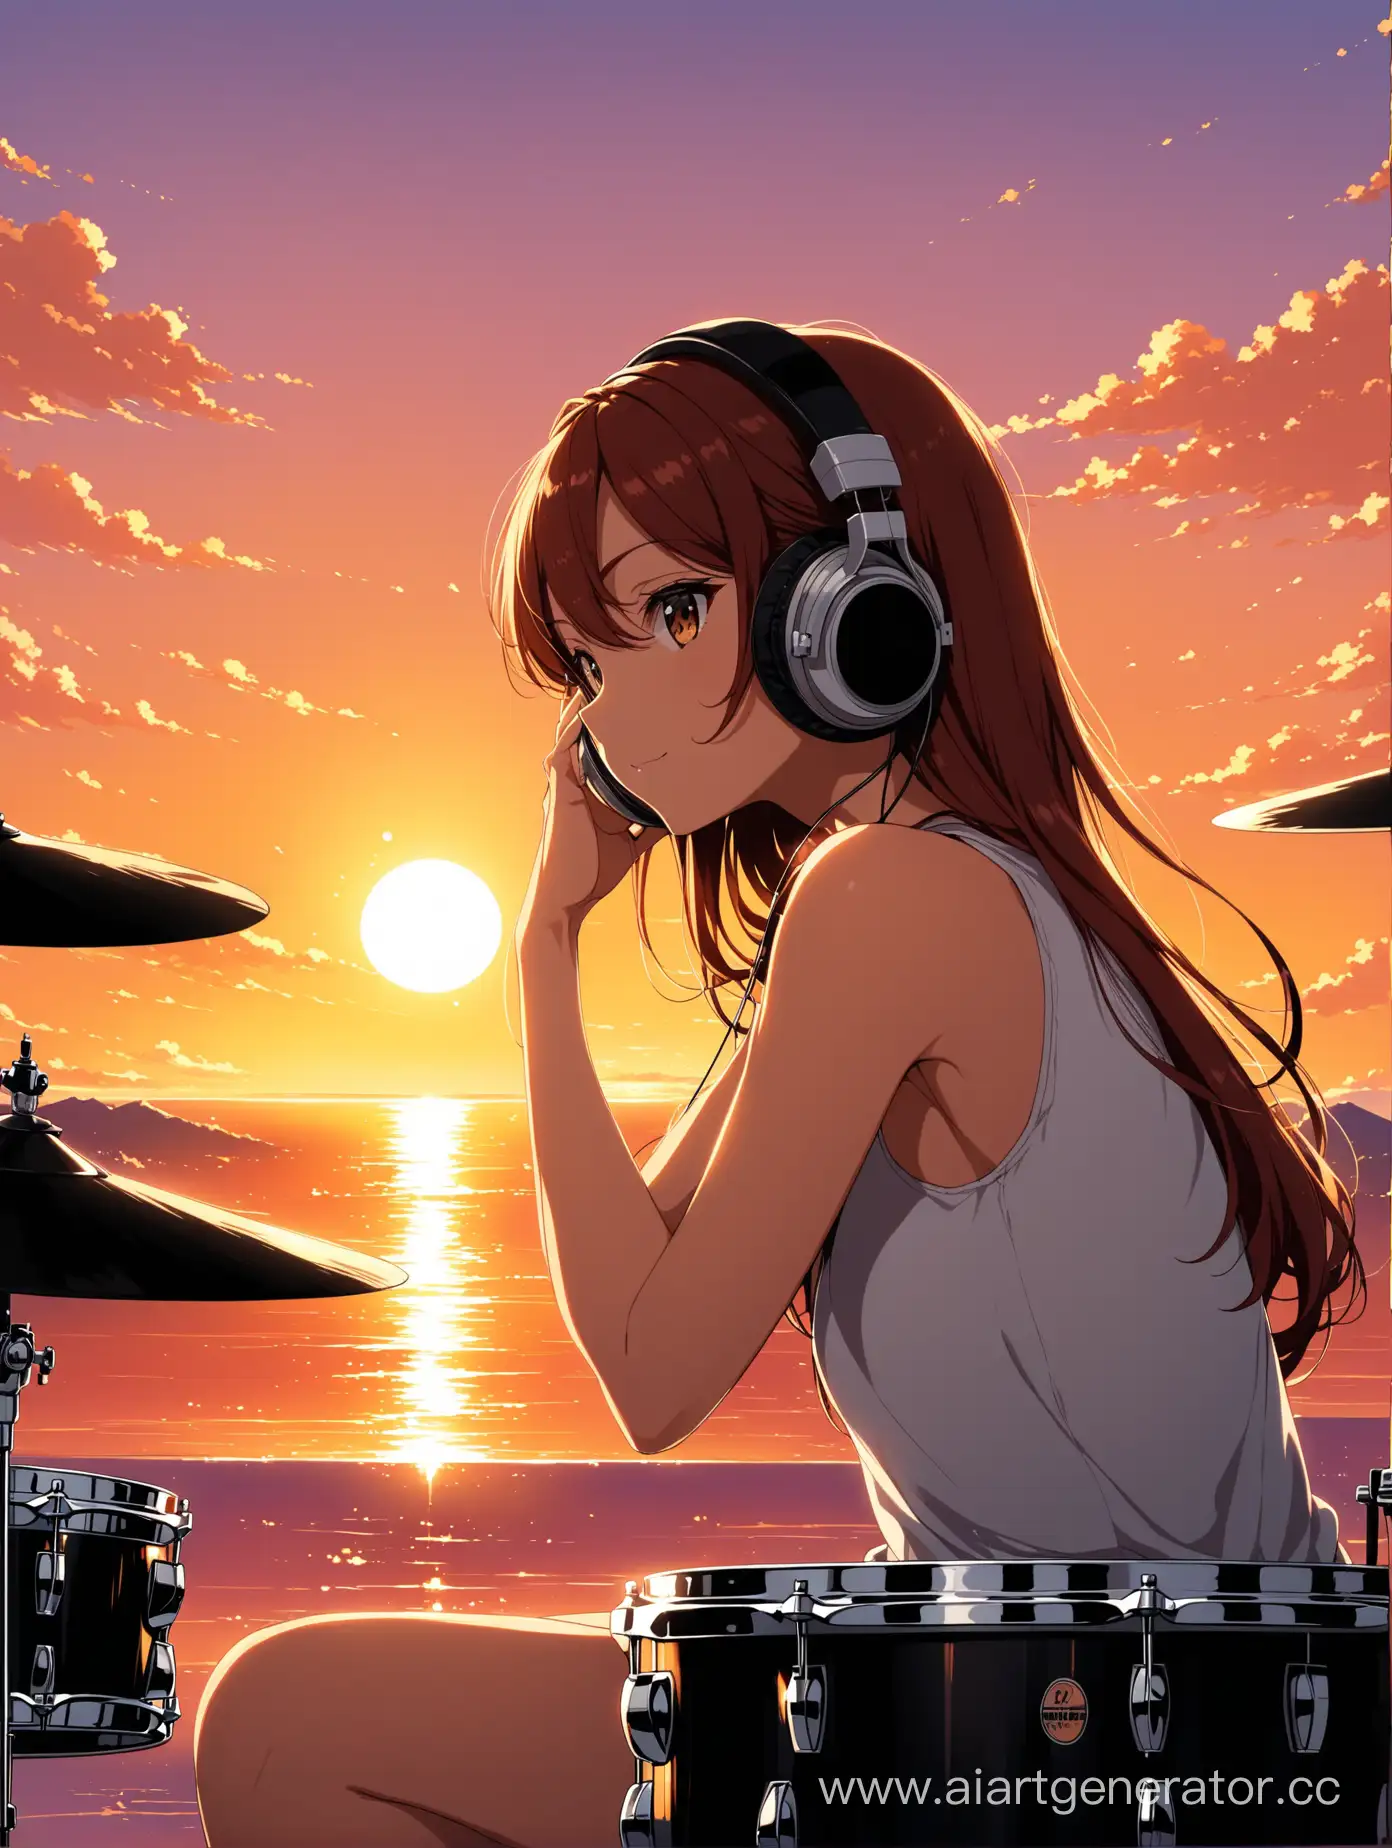 Anime-Girl-Drummer-Enjoying-Sunset-Serenade